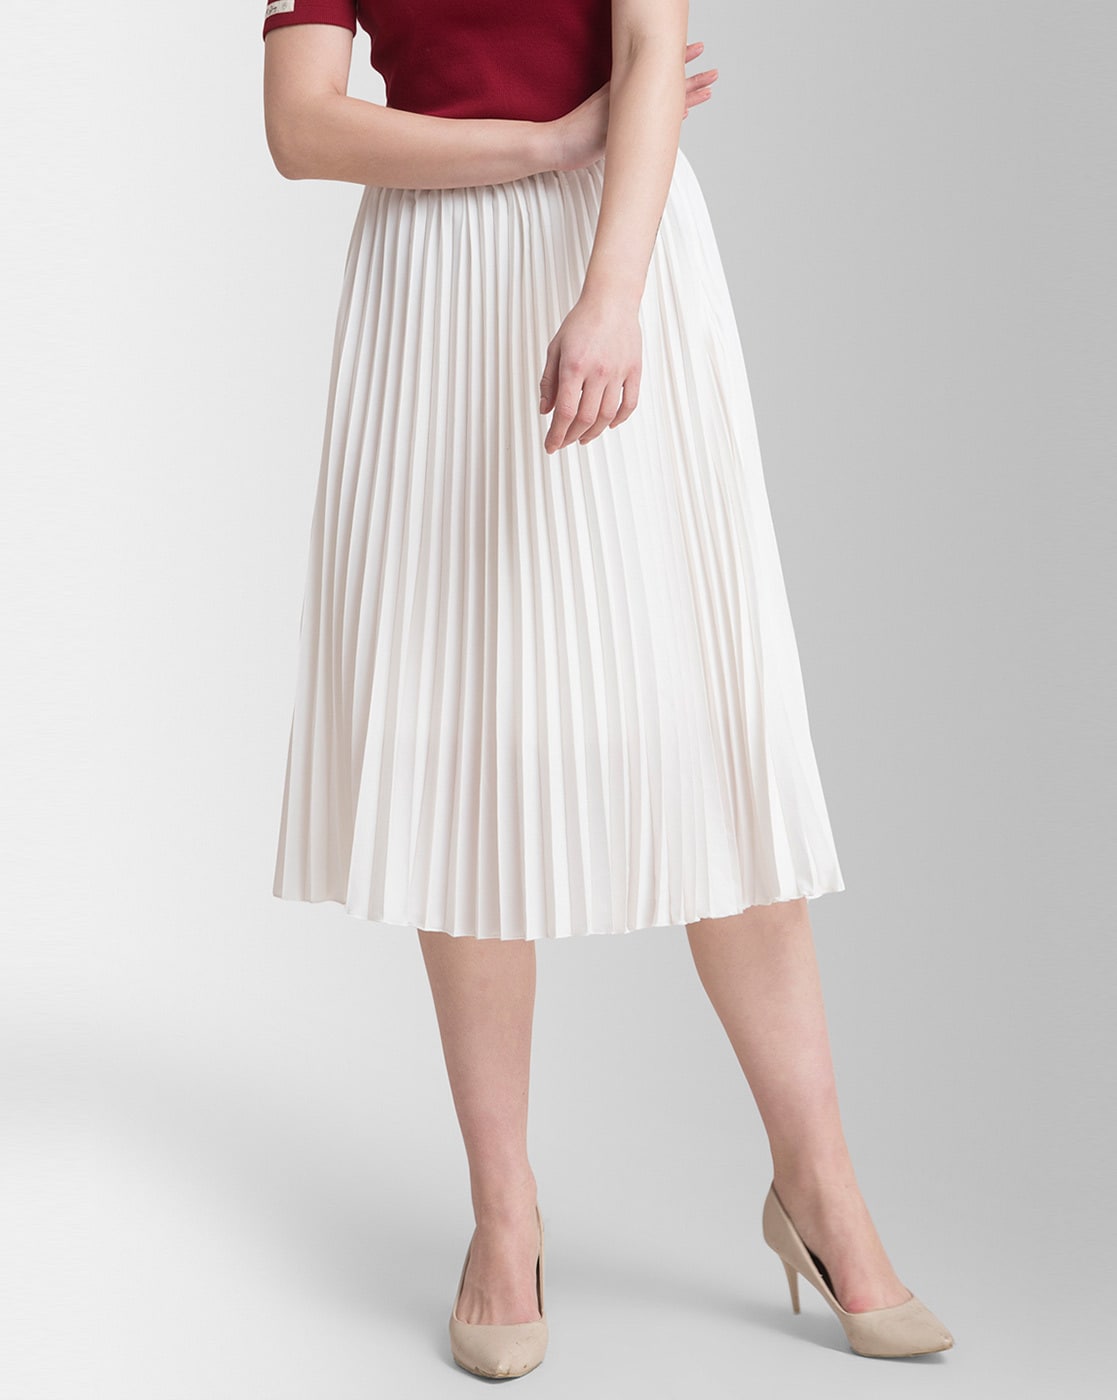 Discover 66+ white full skirt